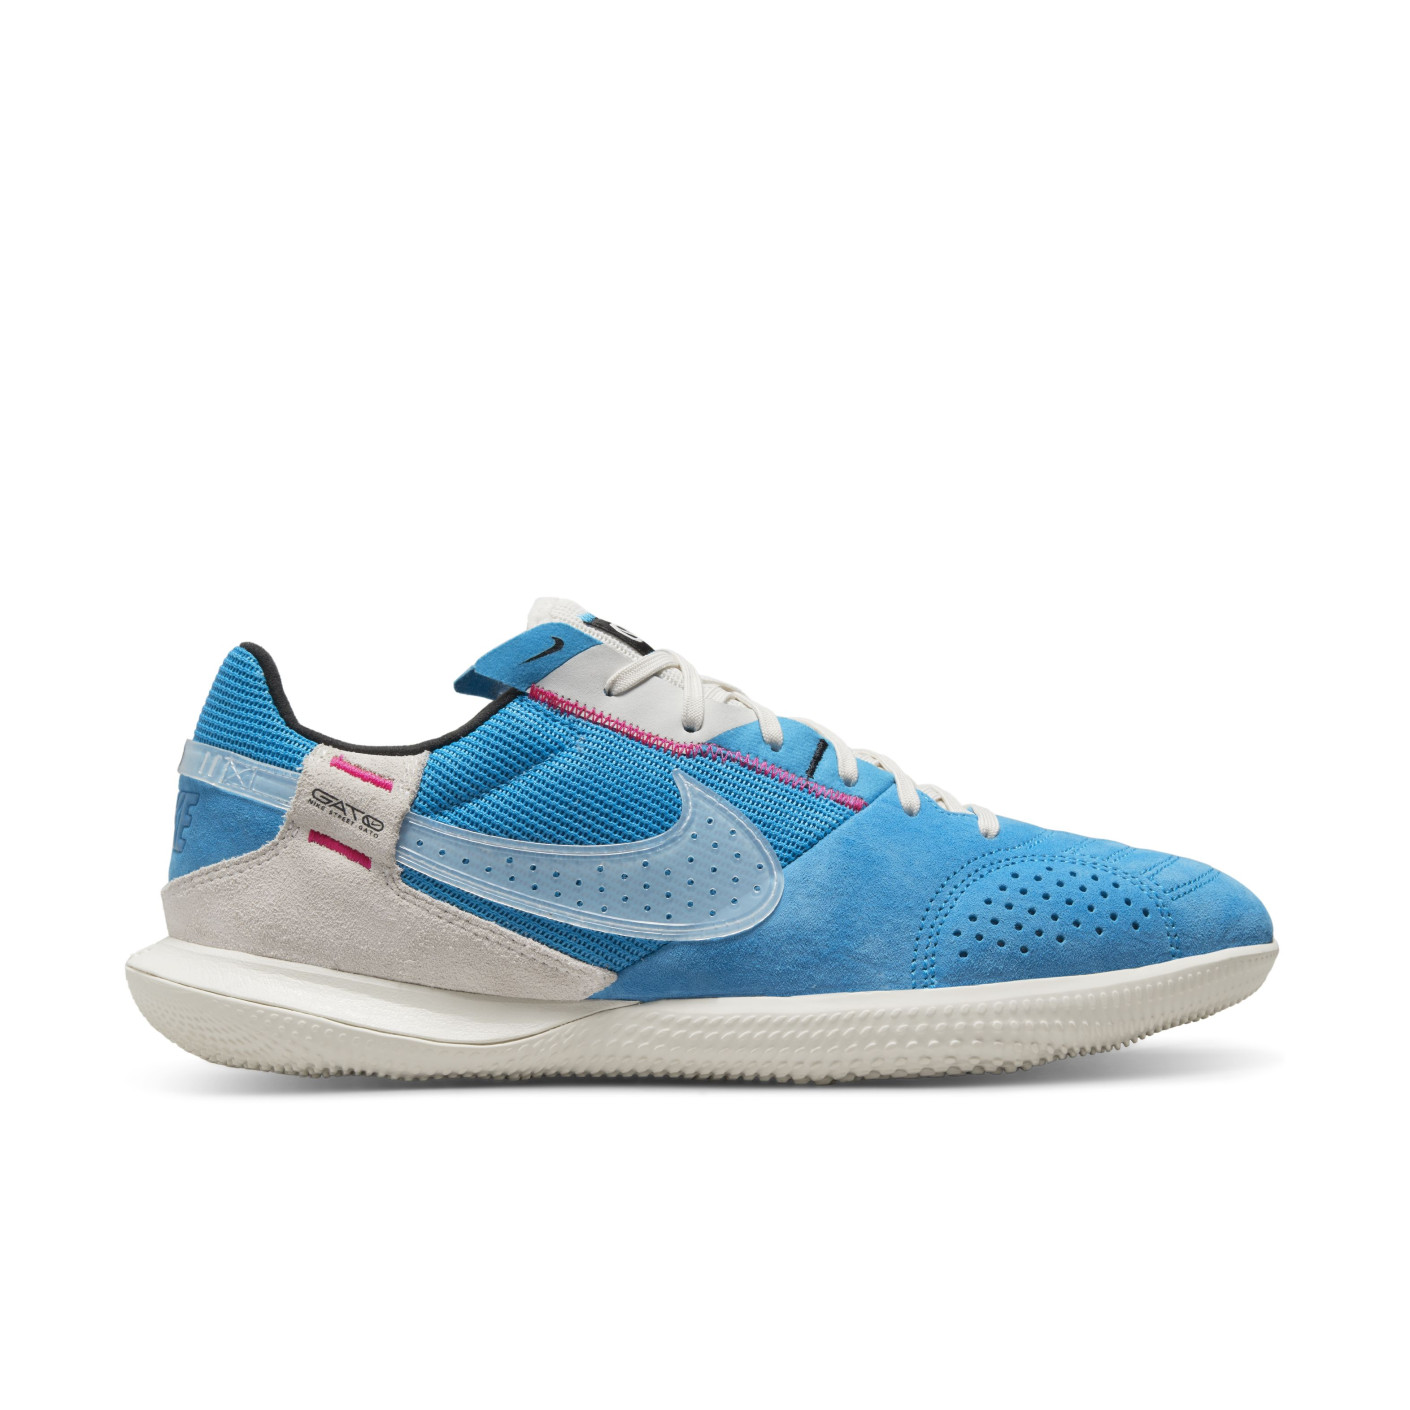 Nike StreetGato Straat / Zaalvoetbalschoenen Blauw Wit Roze